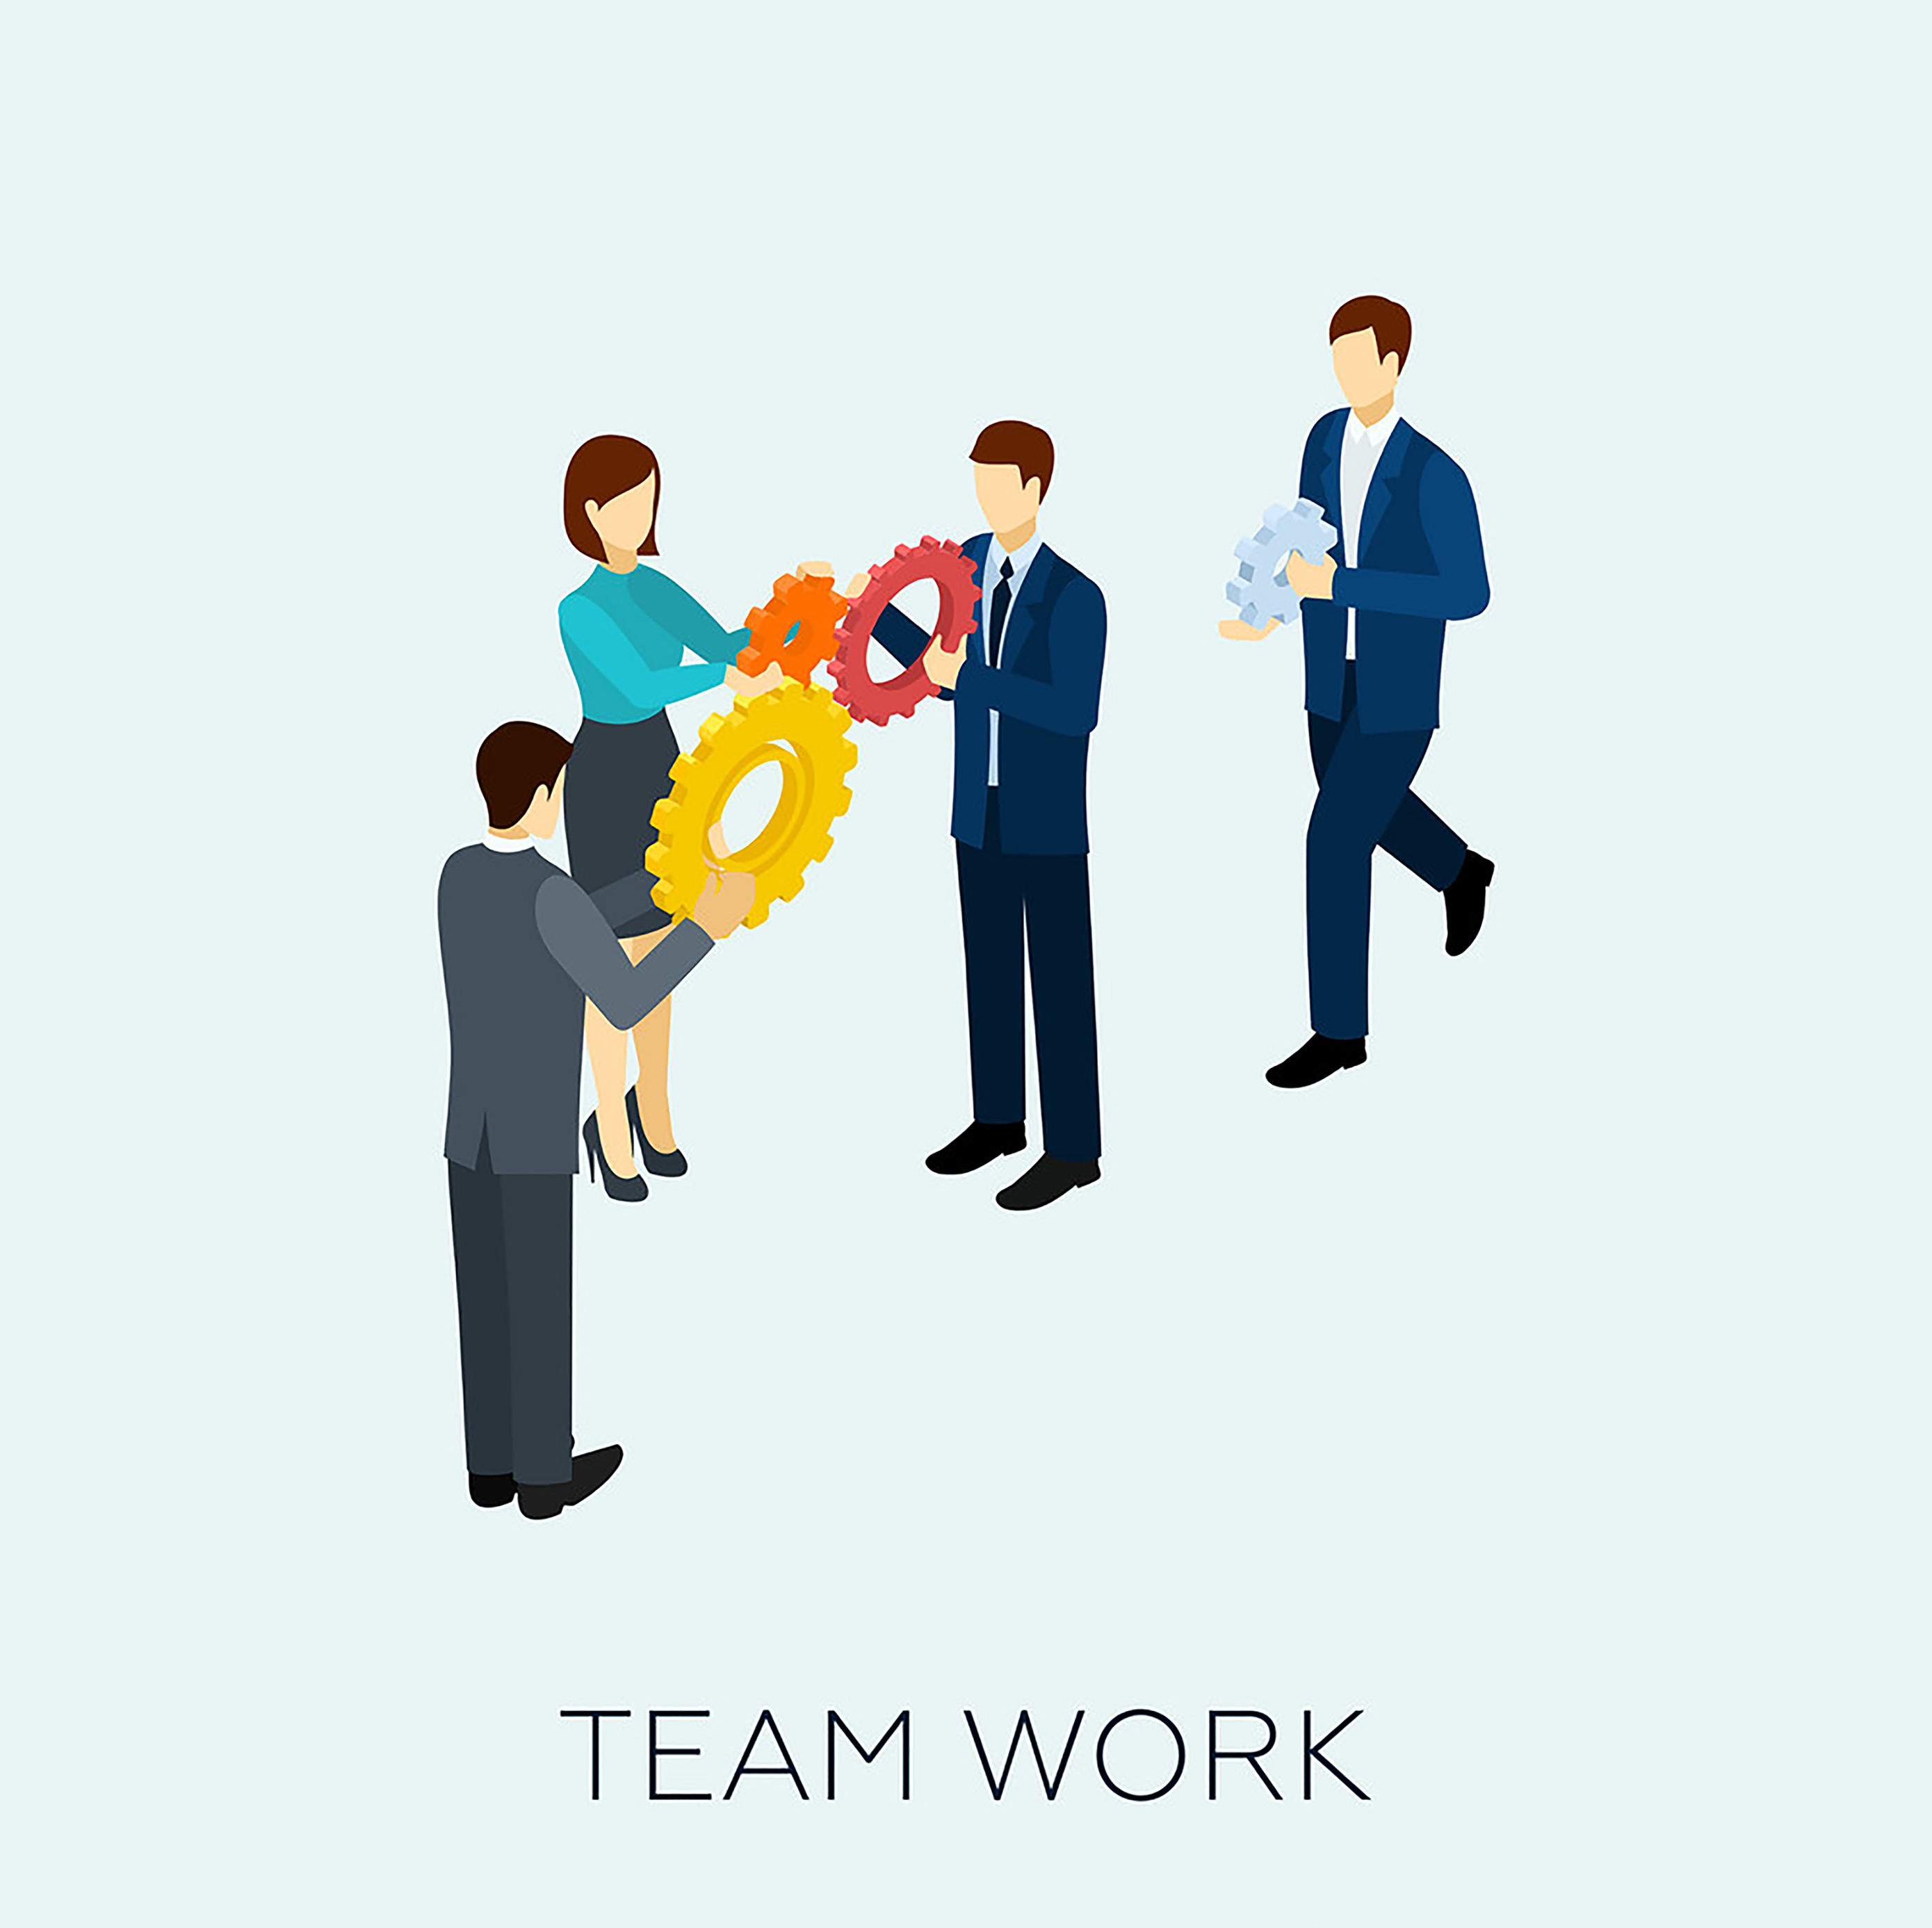 در کار تیمی اعضا مانند چرخ دنده با یکدیگر در ارتباط اند.